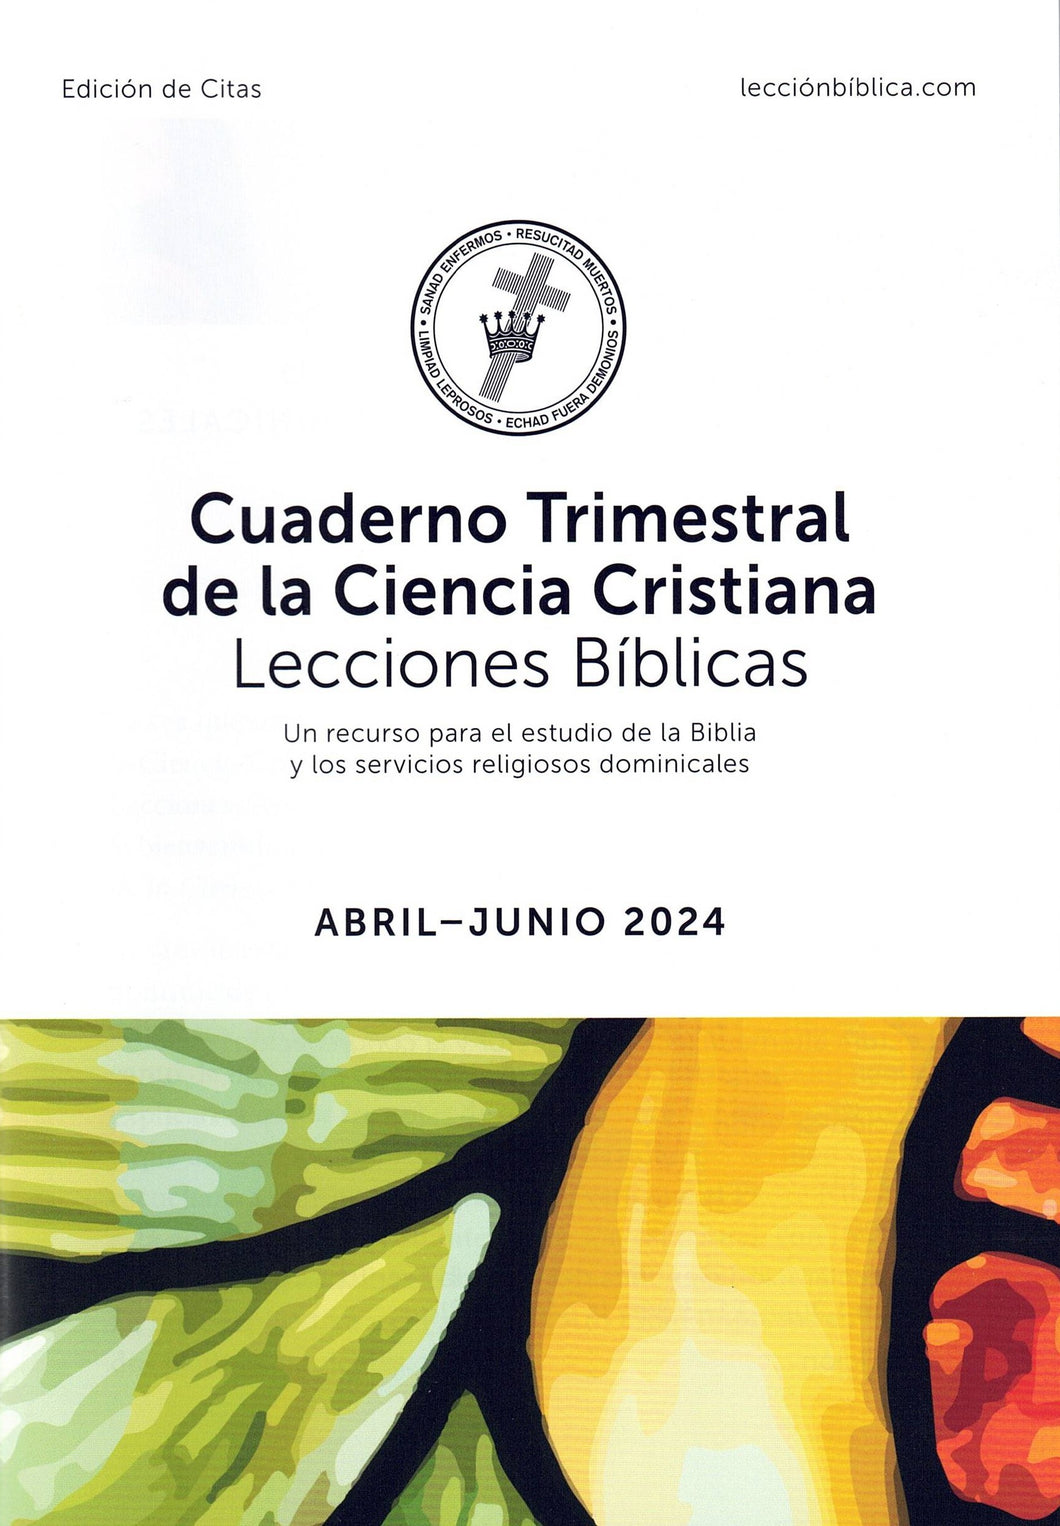 Cuaderno Trimestral de la Ciencia Cristiana Lecciones Bíblicas - edición de citas